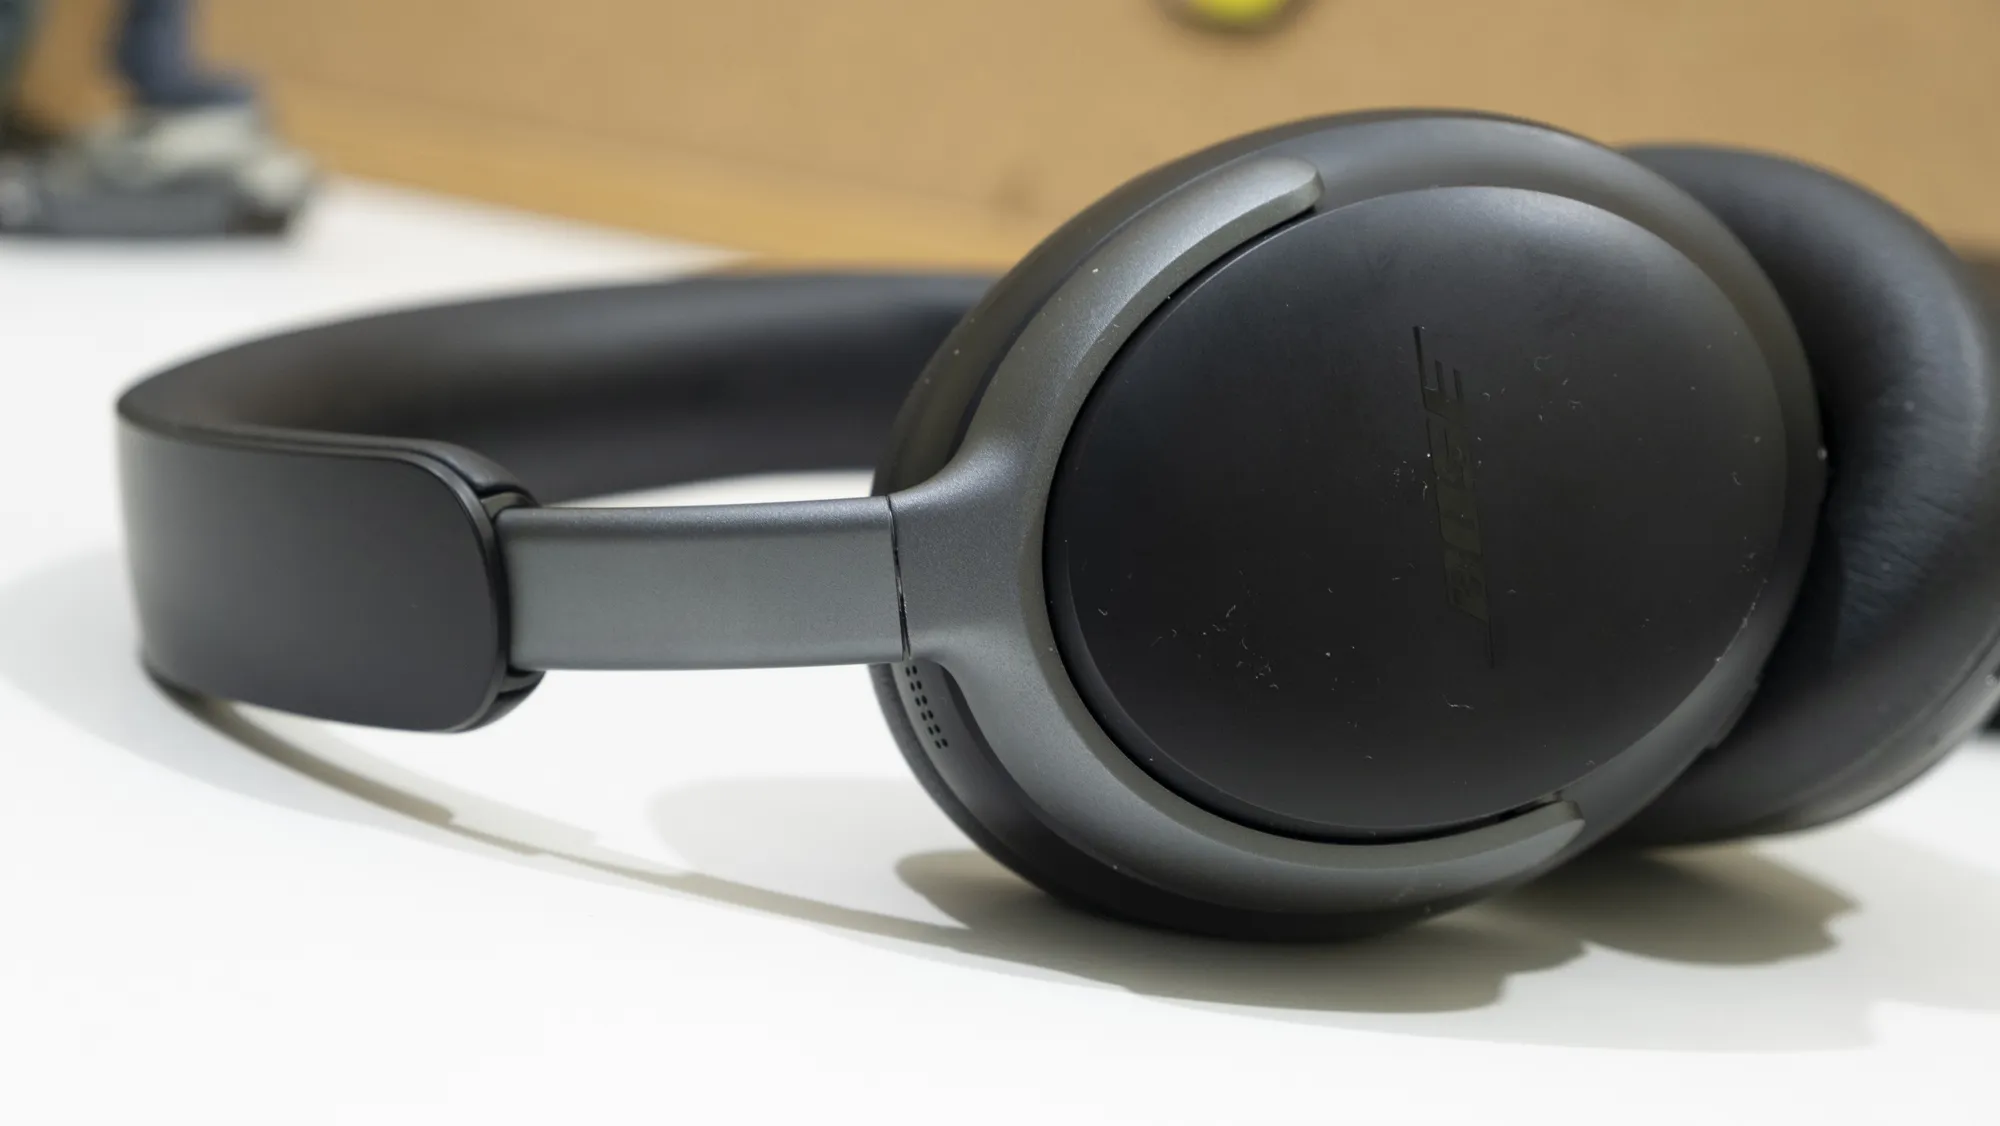 He probado los QuietComfort Ultra, los auriculares más avanzados (y caros)  de Bose: esta es mi opinión